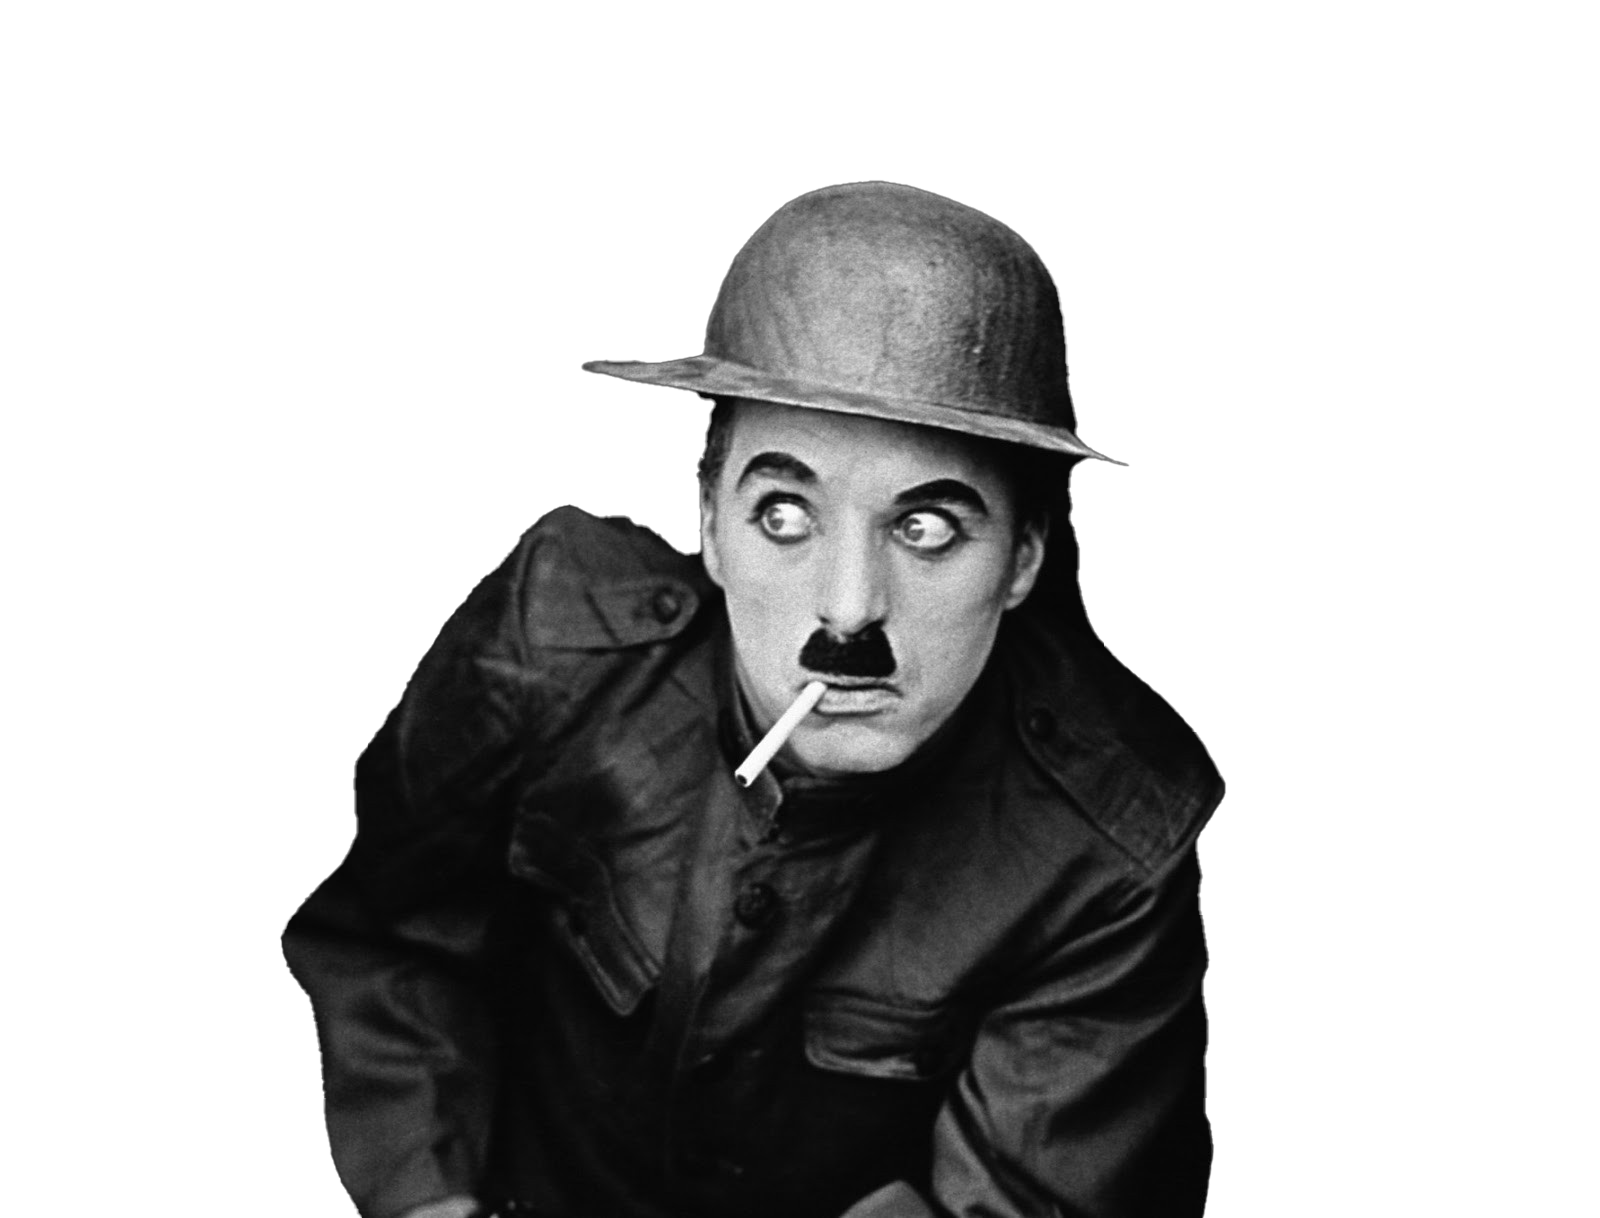 Charles Chaplin: recordando a un genio del cine a 40 años de su muerte ...